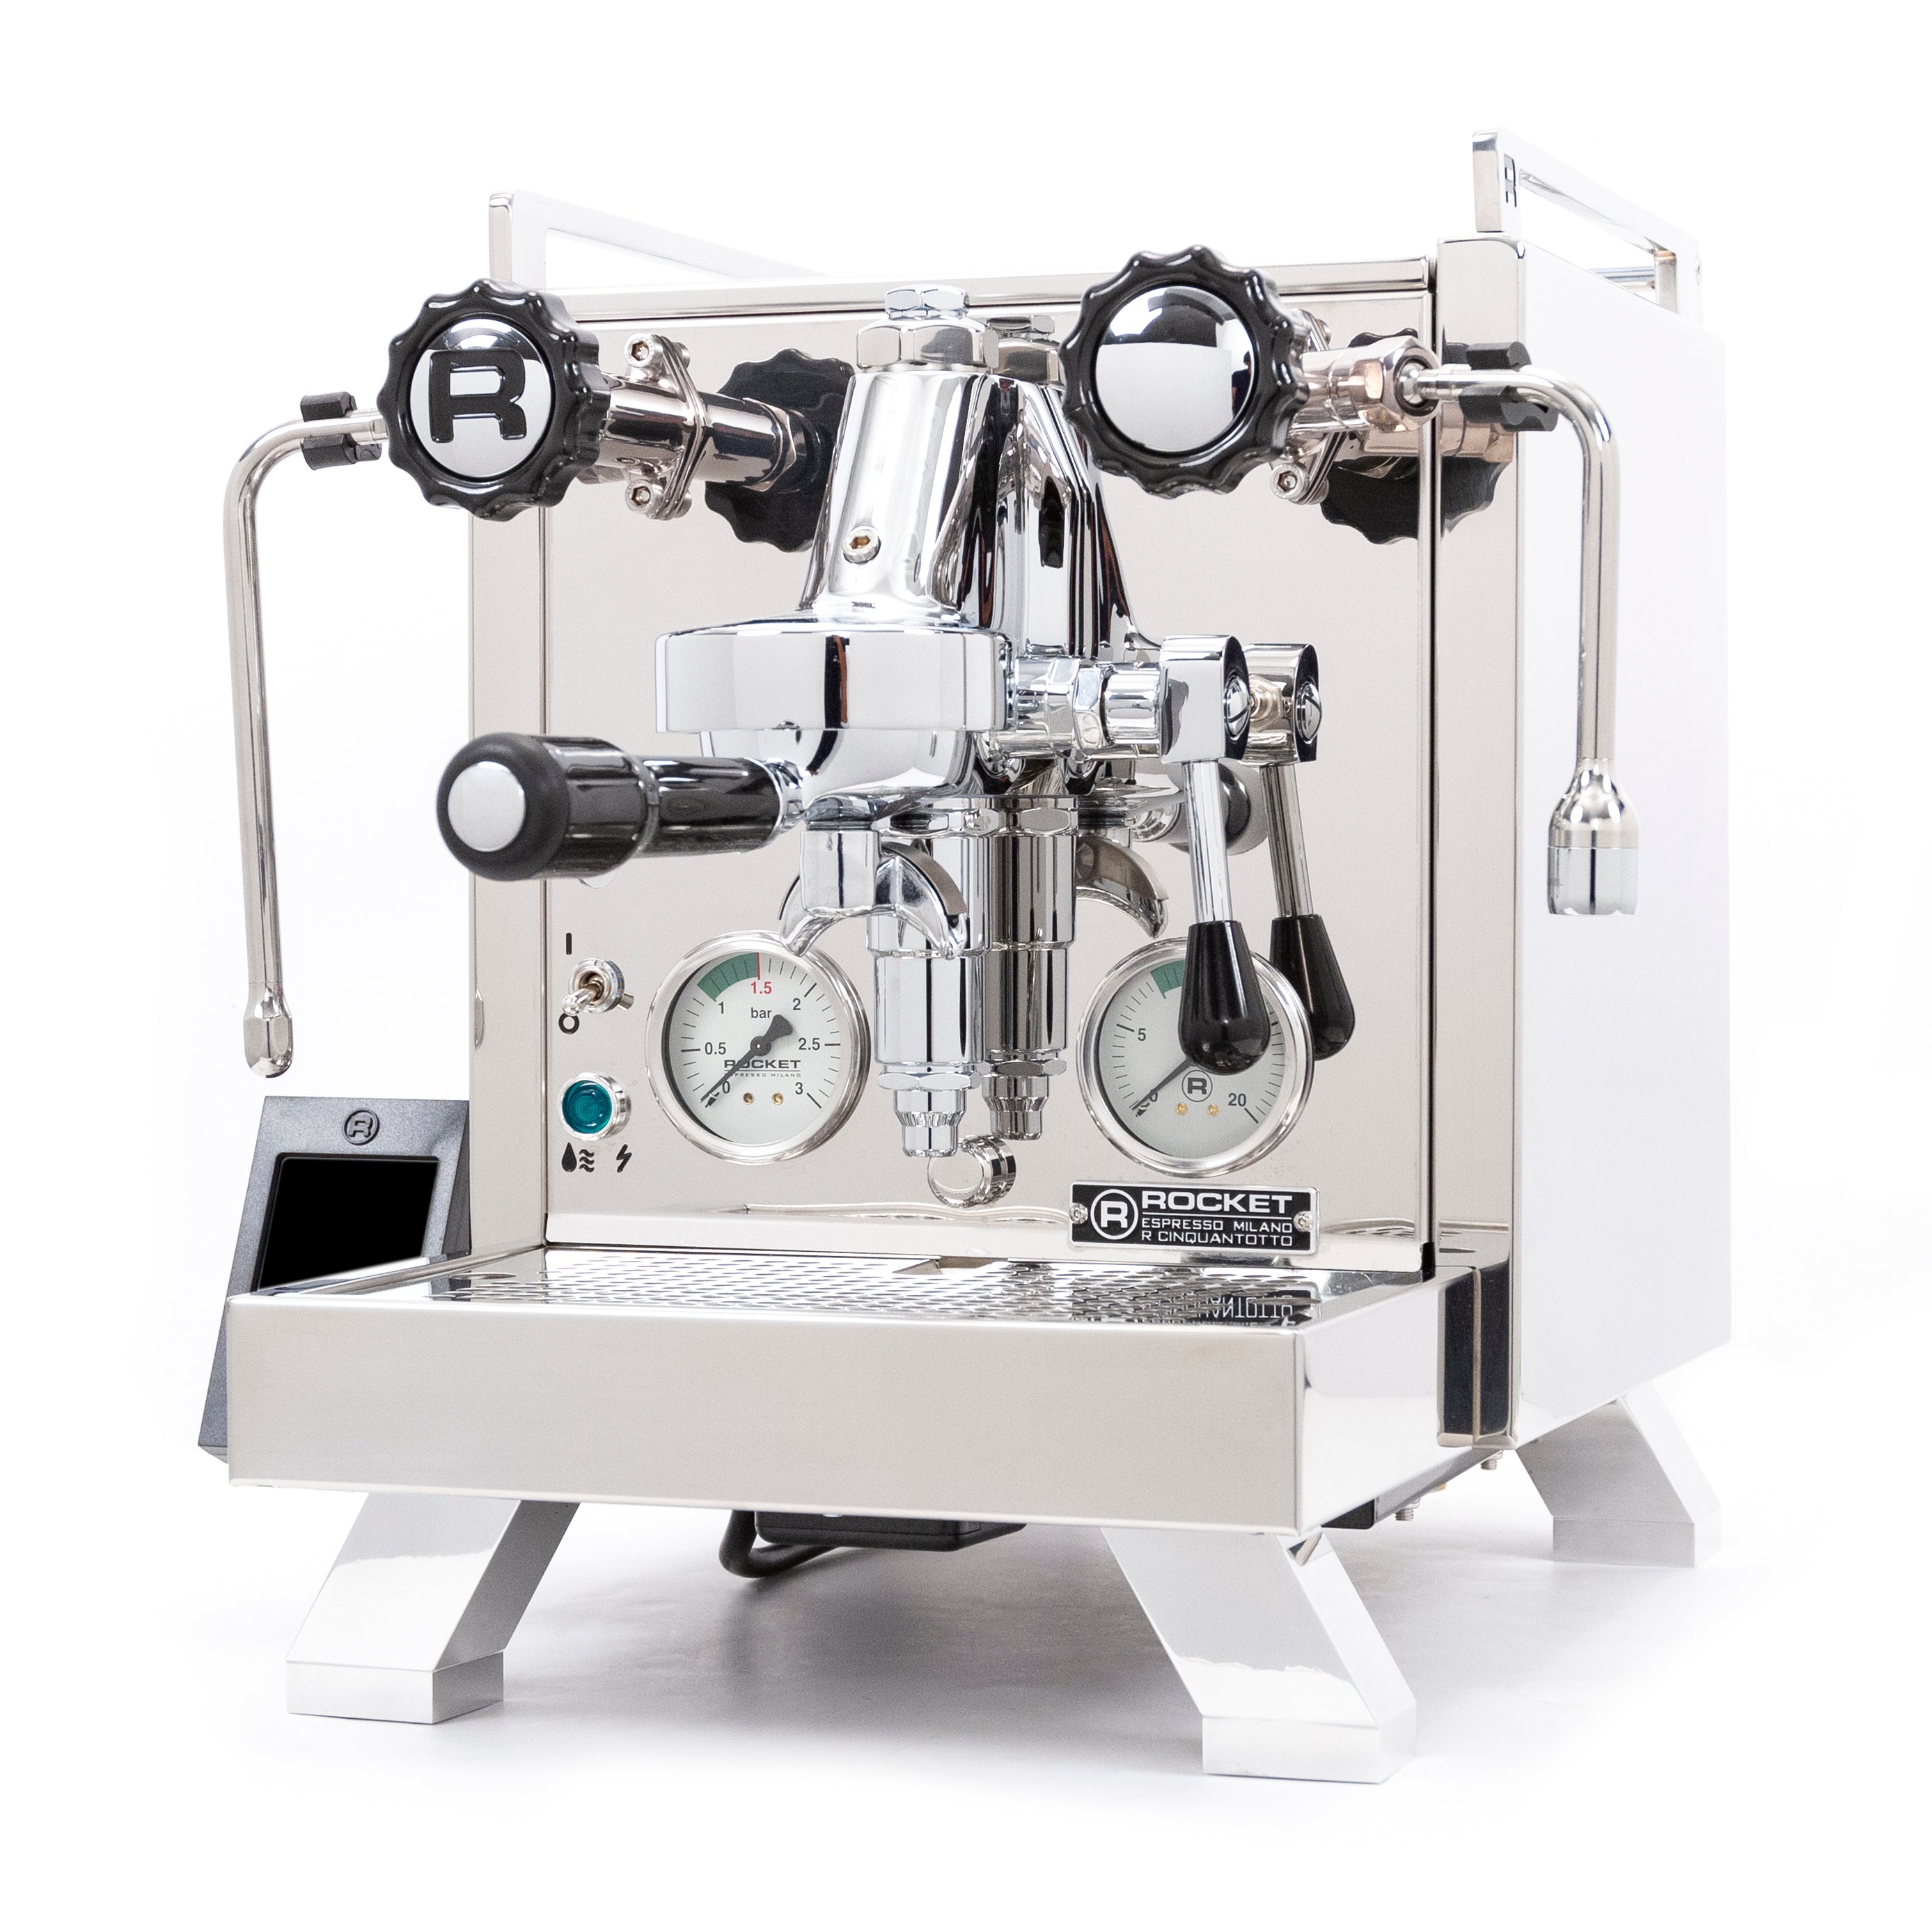 Rocket Espresso R Cinquantotto Espresso Machine – Whole Latte Love